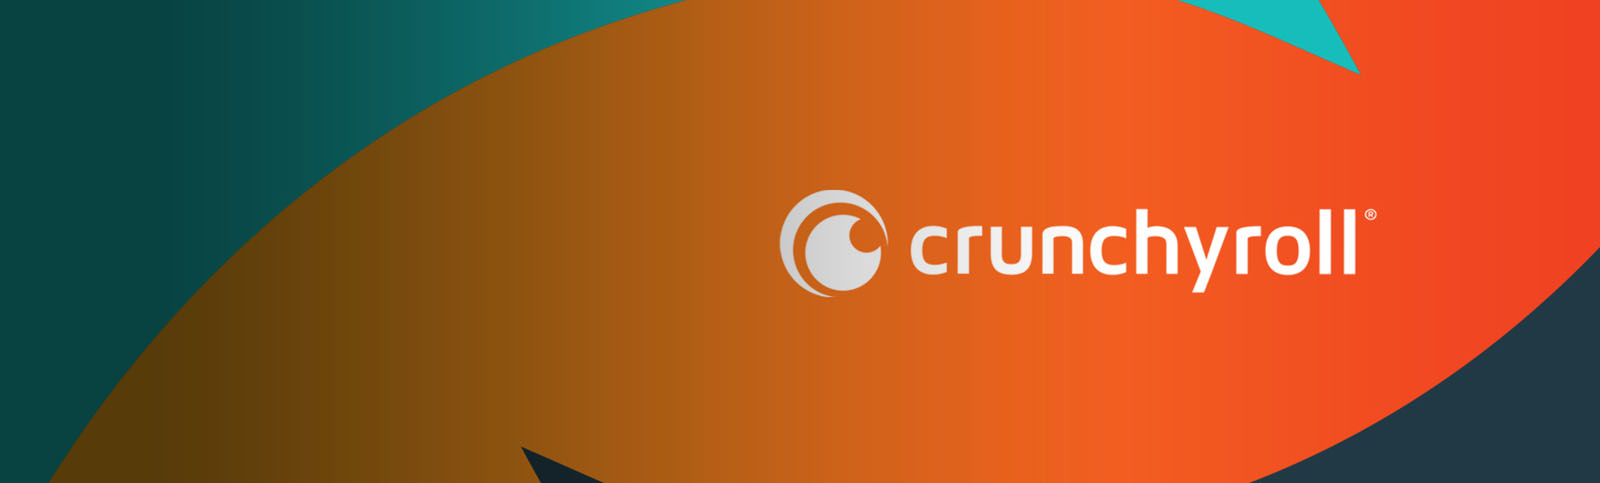 Funimation Global Group de Sony completa la adquisición de Crunchyroll de AT&T